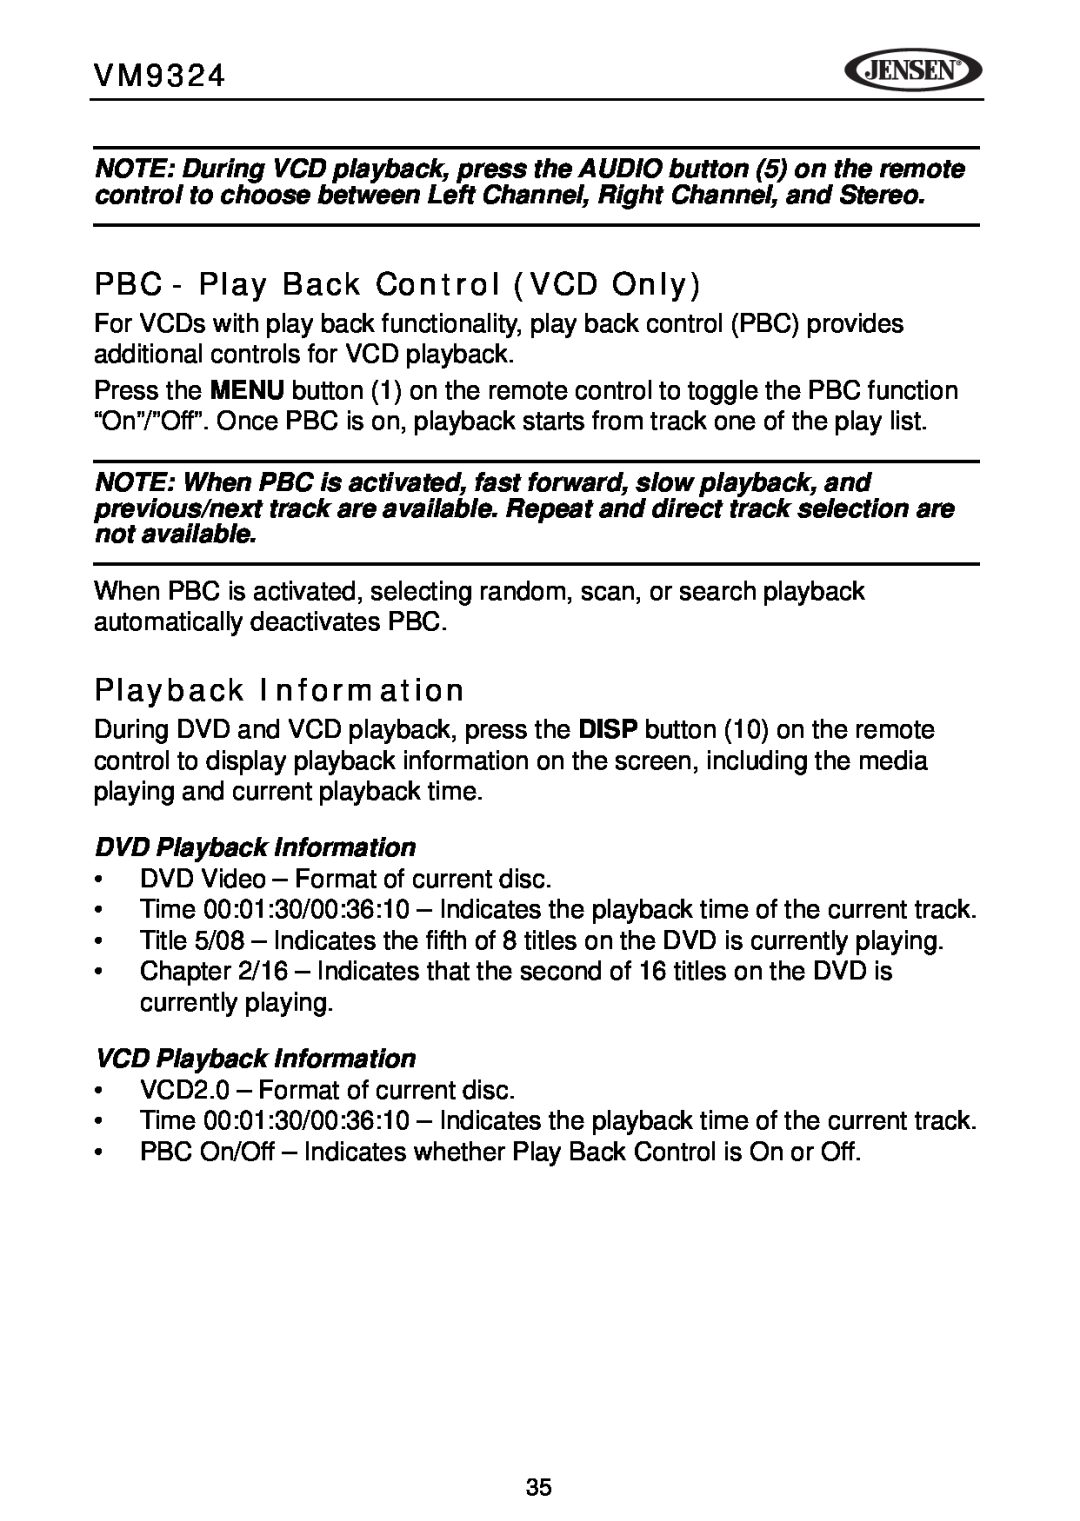 Jensen VM9324 manual PBC - Play Back Control VCD Only, DVD Playback Information, VCD Playback Information 